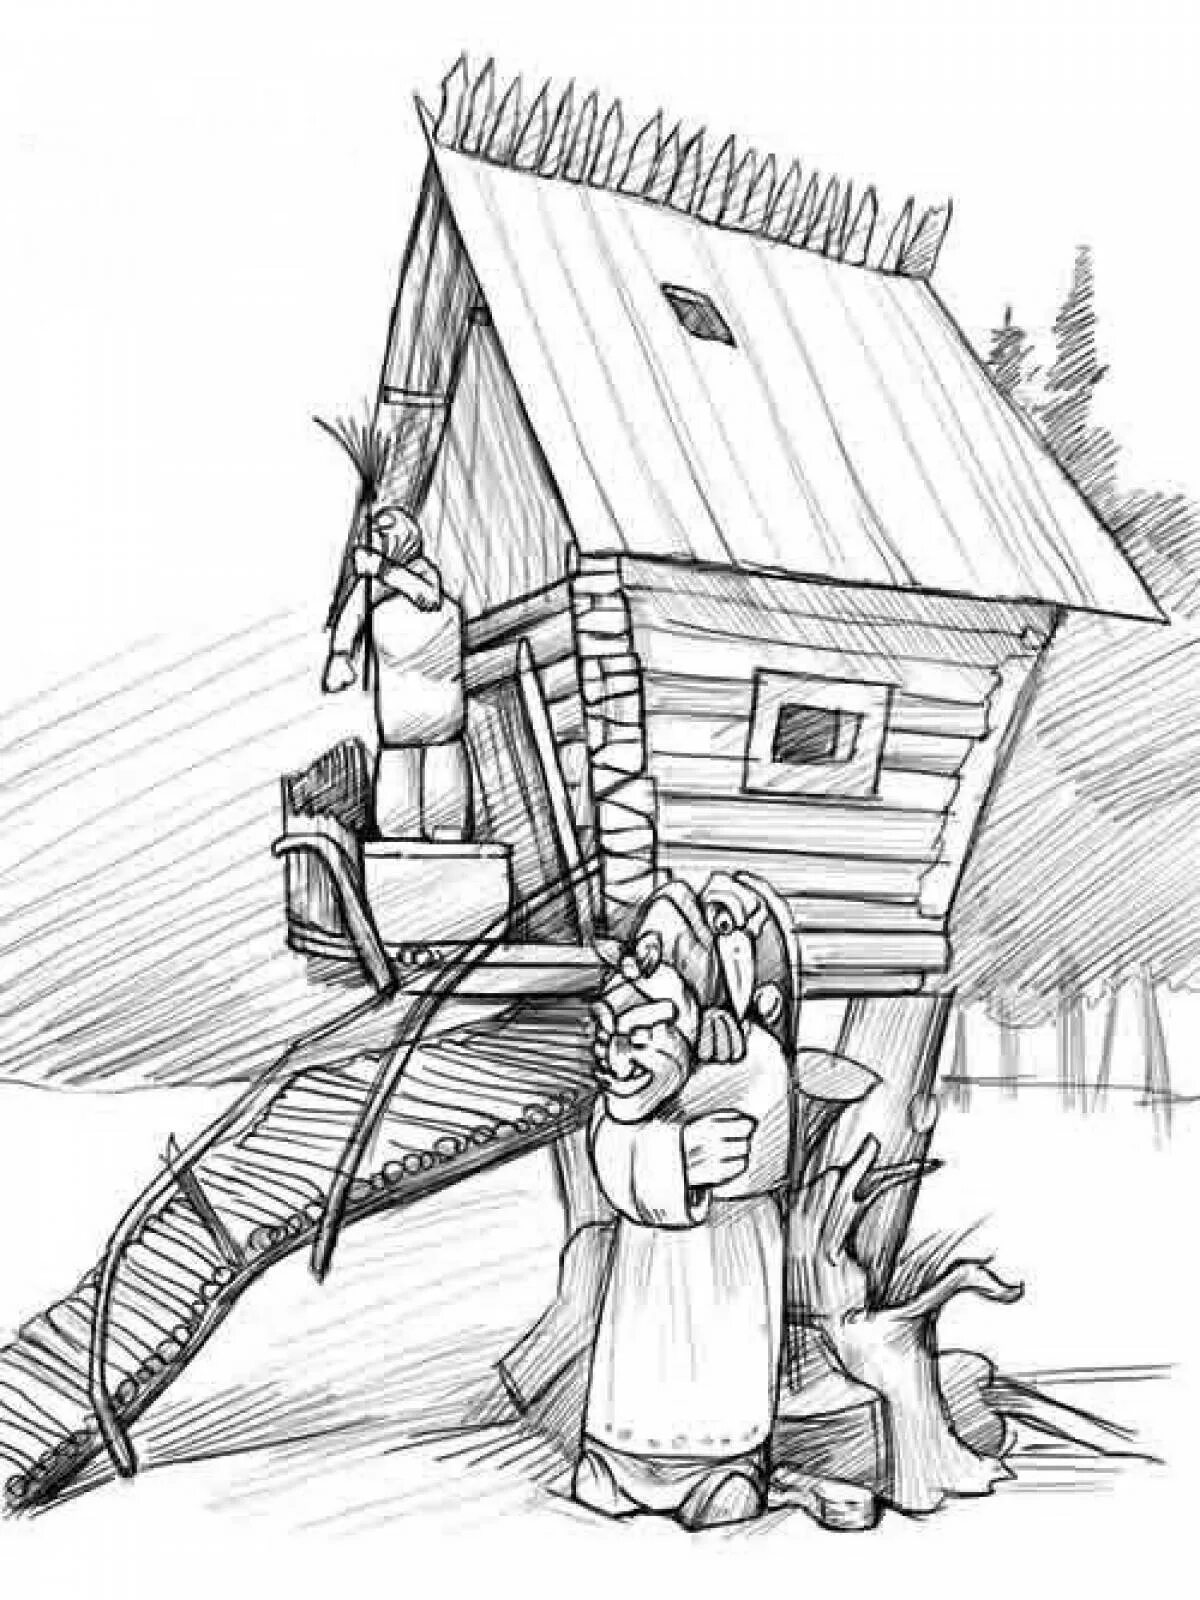 Иллюстрация к стихотворению Бальмонта у чудищ. Дом на курьих ножках раскраска. Избушка на курьих ножках раскраска. Избушка на курьих ножках рисунок карандашом. Произведение у чудищ